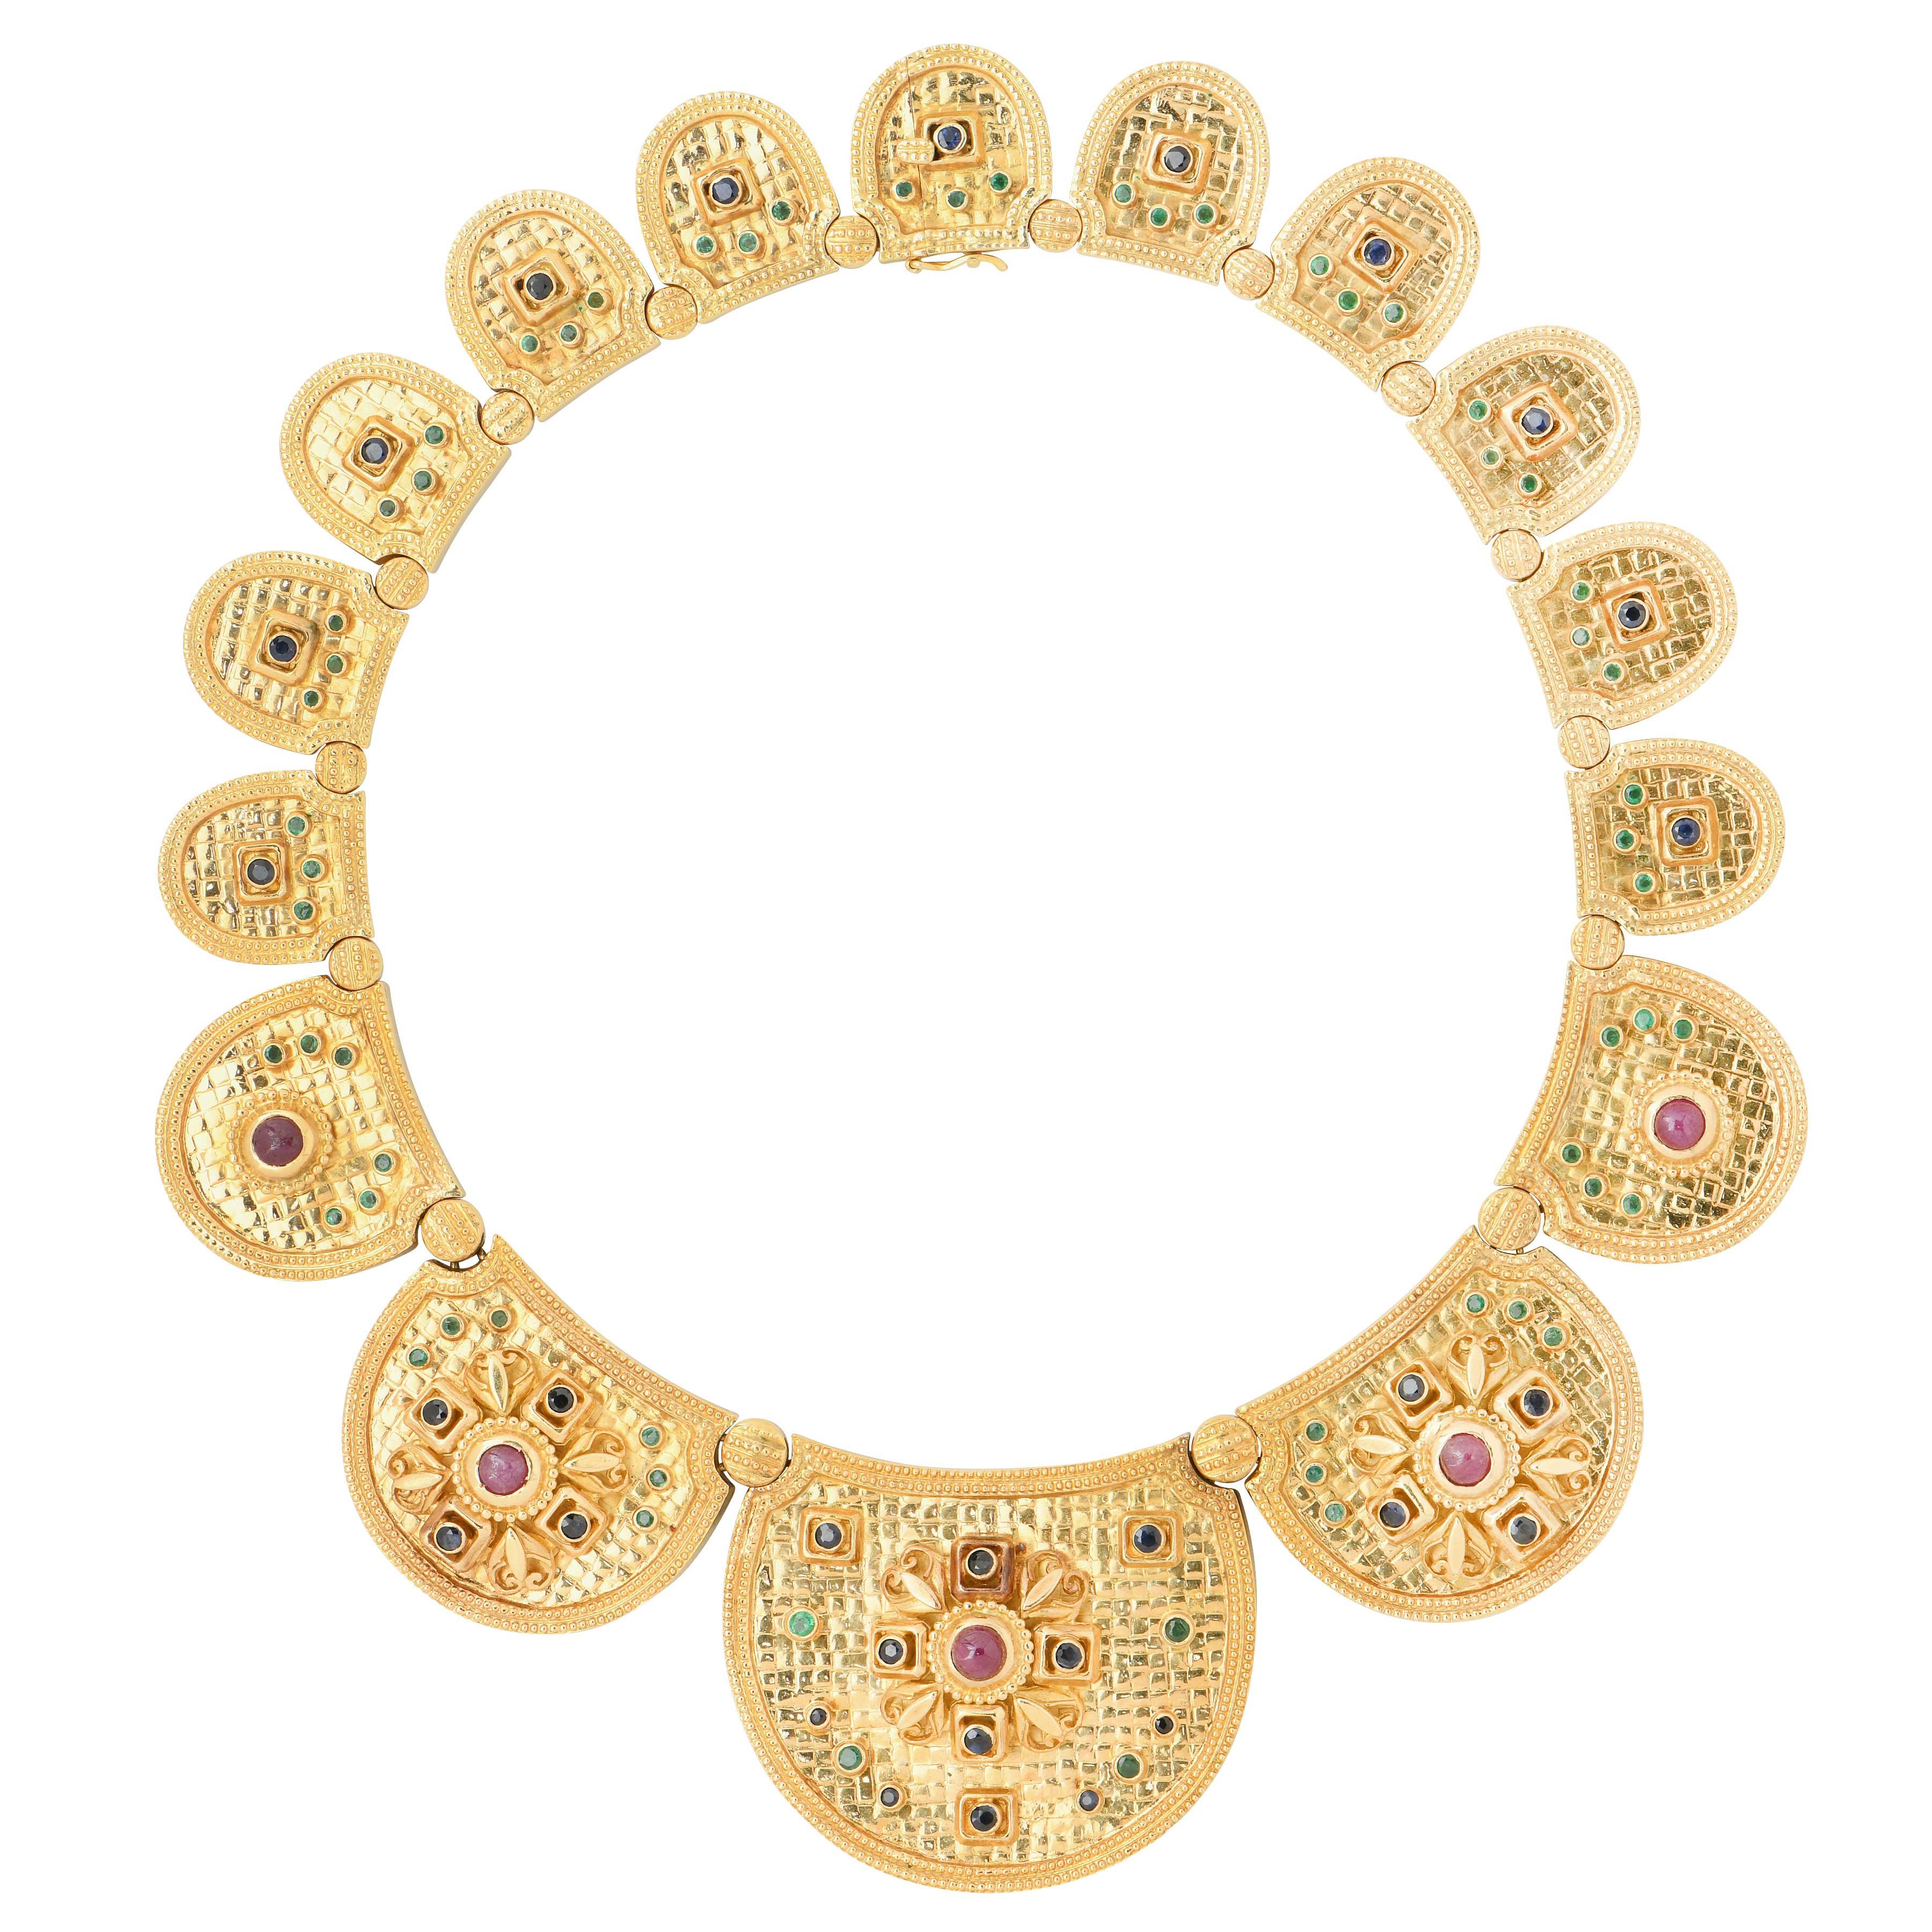 Ilias Lalaounis Etrusker-Halskette mit Rubinen, Saphiren und Smaragden aus 18 Karat Gelbgold. Dieses einzigartige Stück des griechischen Juweliermeisters Ilias Lalaounis ist ein Beispiel für die Kreativität des Designers und bleibt gleichzeitig